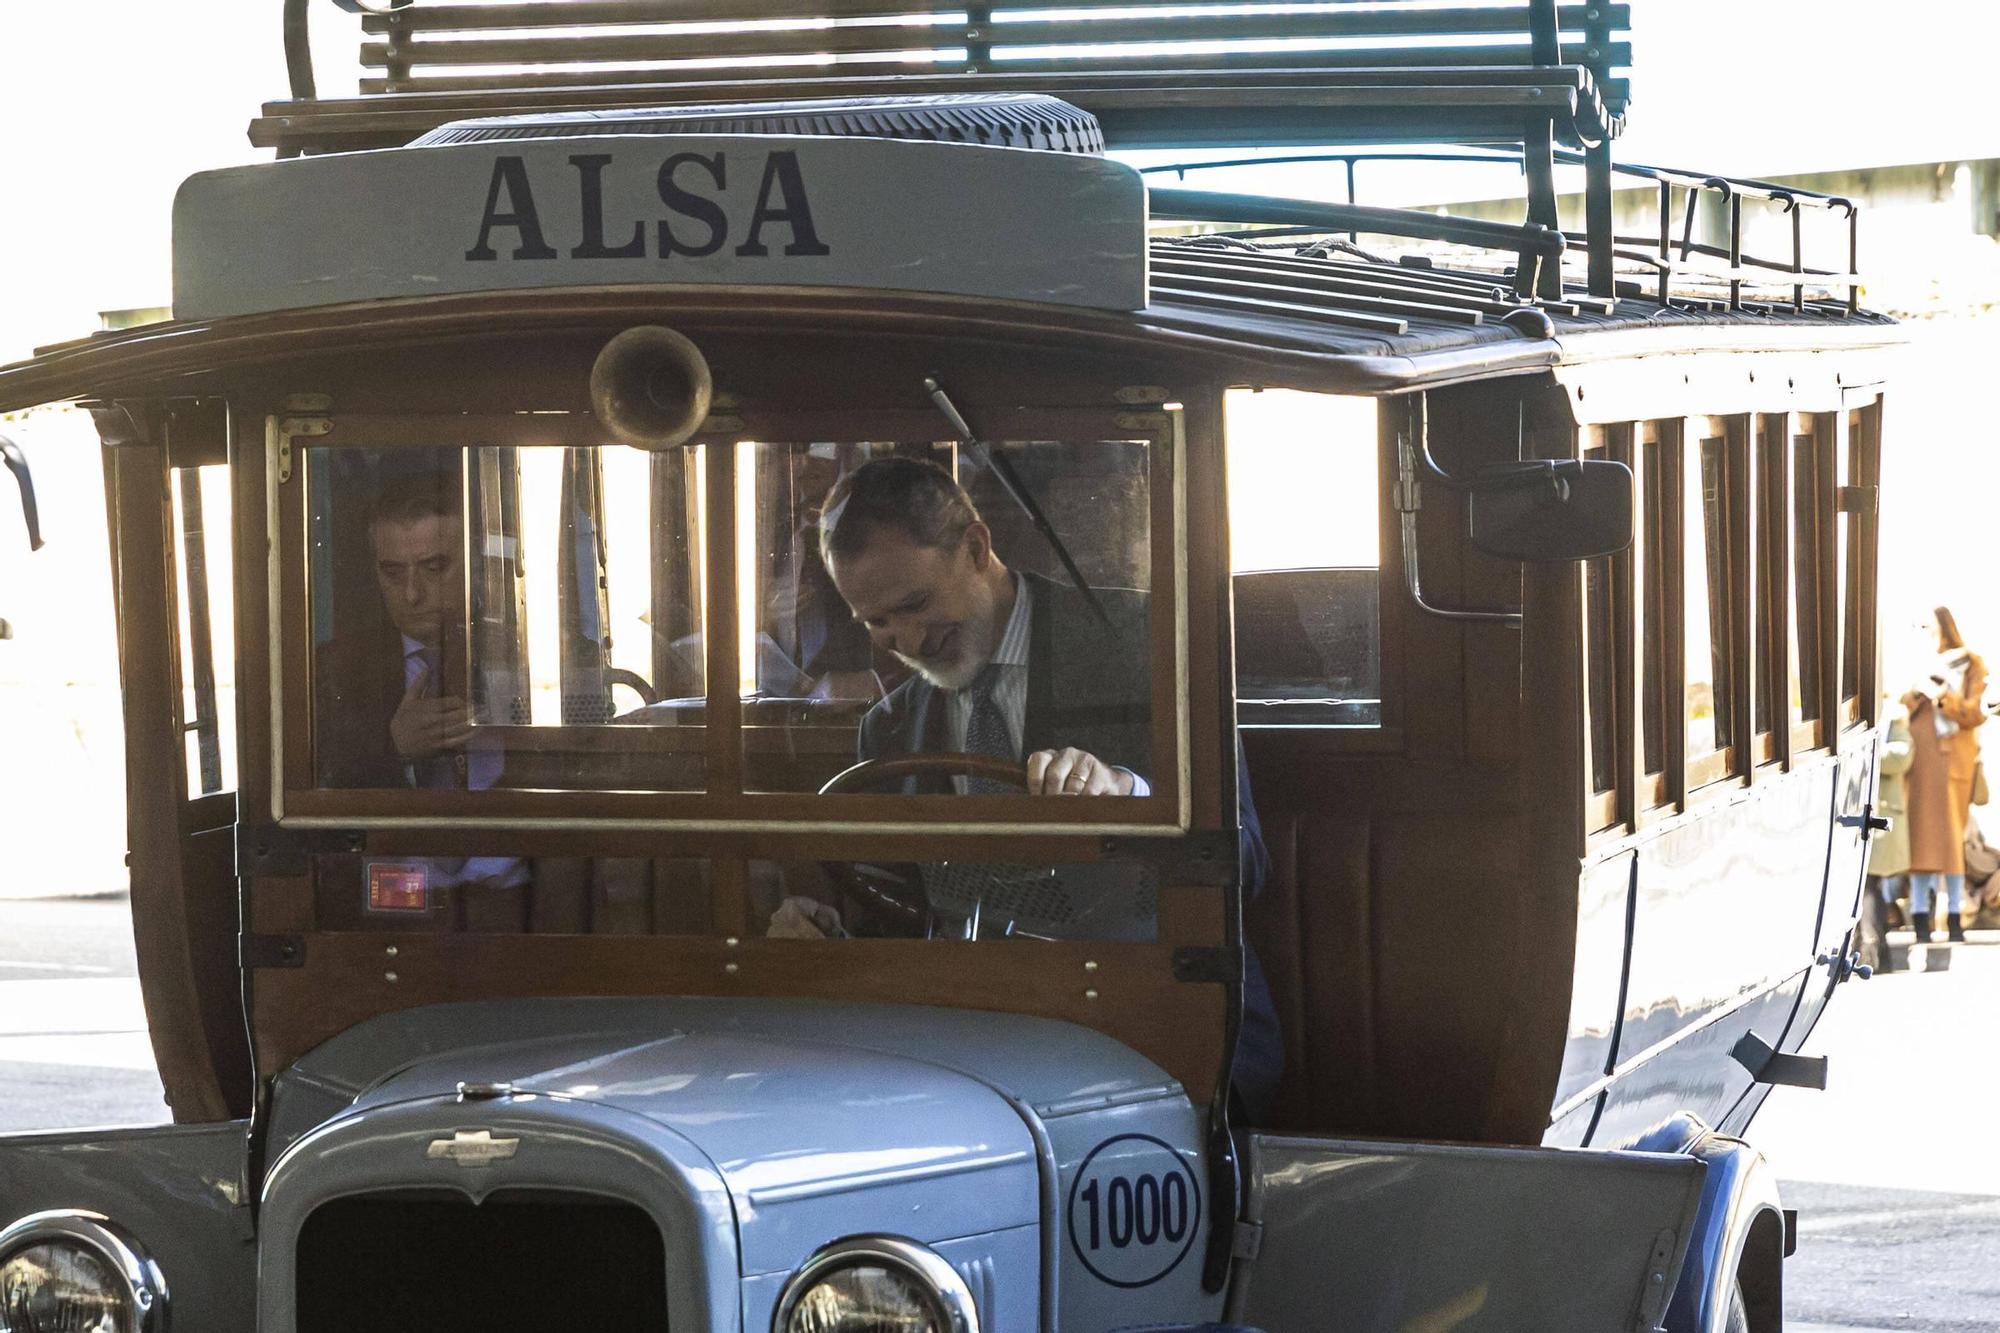 EN IMÁGENES: El Rey visita la estación de autobuses de Oviedo para conmemorar los 100 años de Alsa